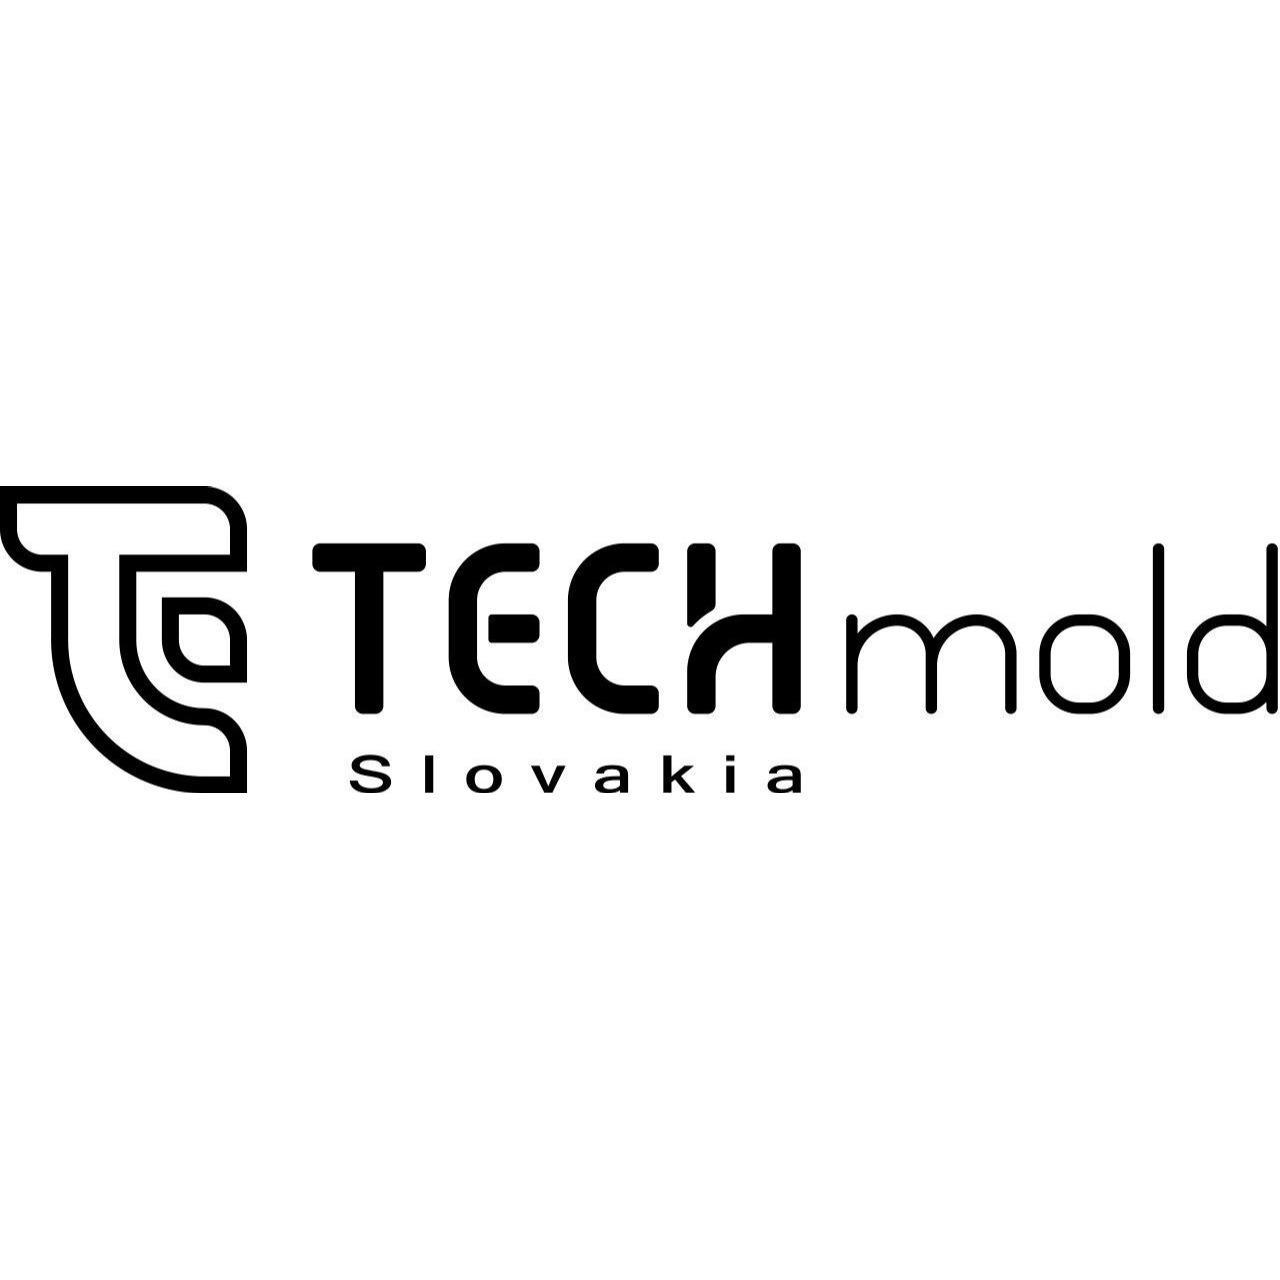 Techmold Slovakia s. r. o.